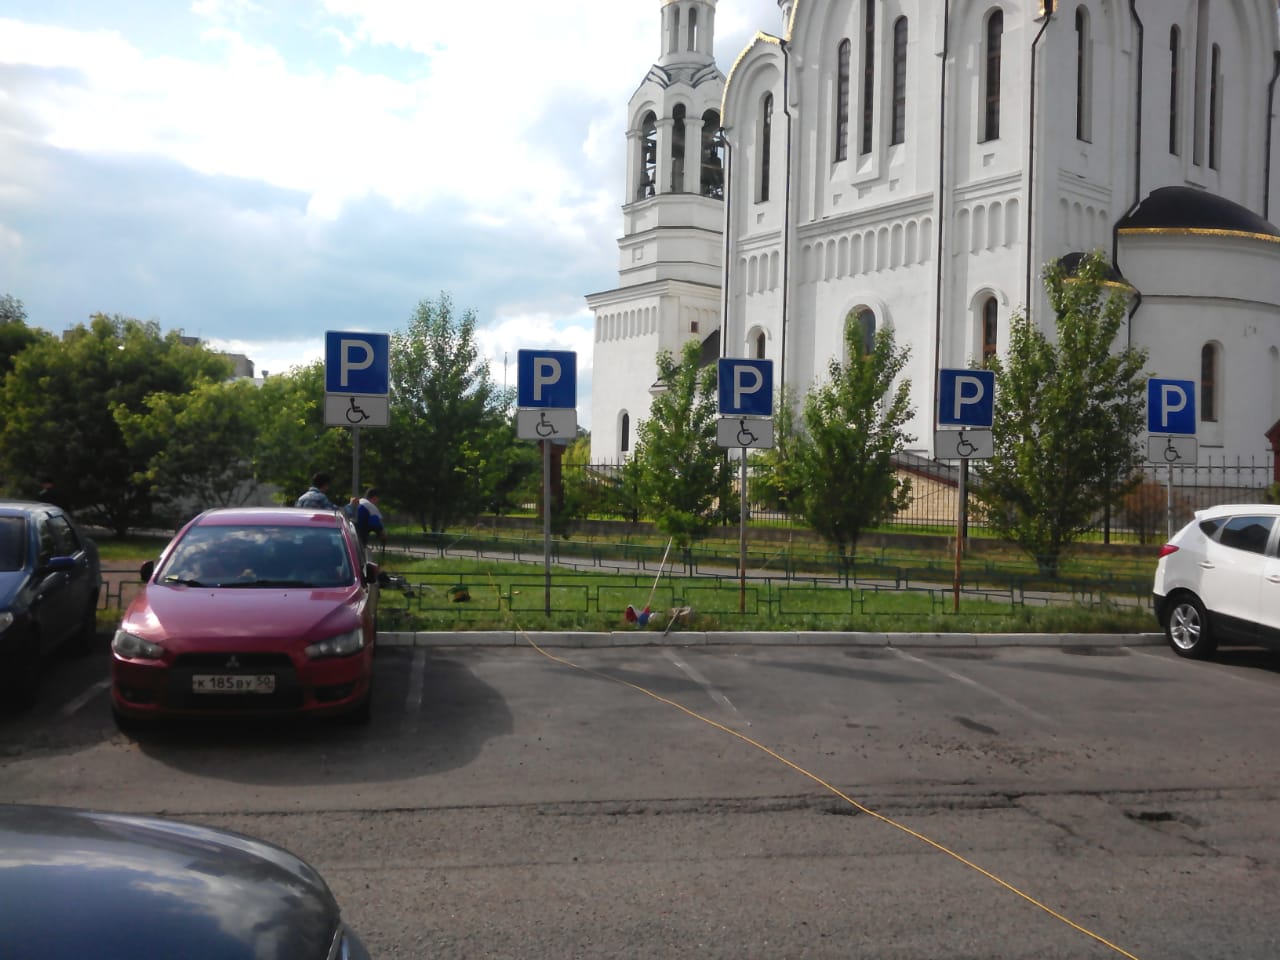 По заявкам жителей установлены дополнительные знаки парковки для инвалидов около многоквартирного дома 45 п.Развилка напротив Иосифо-Волоцкого храма.